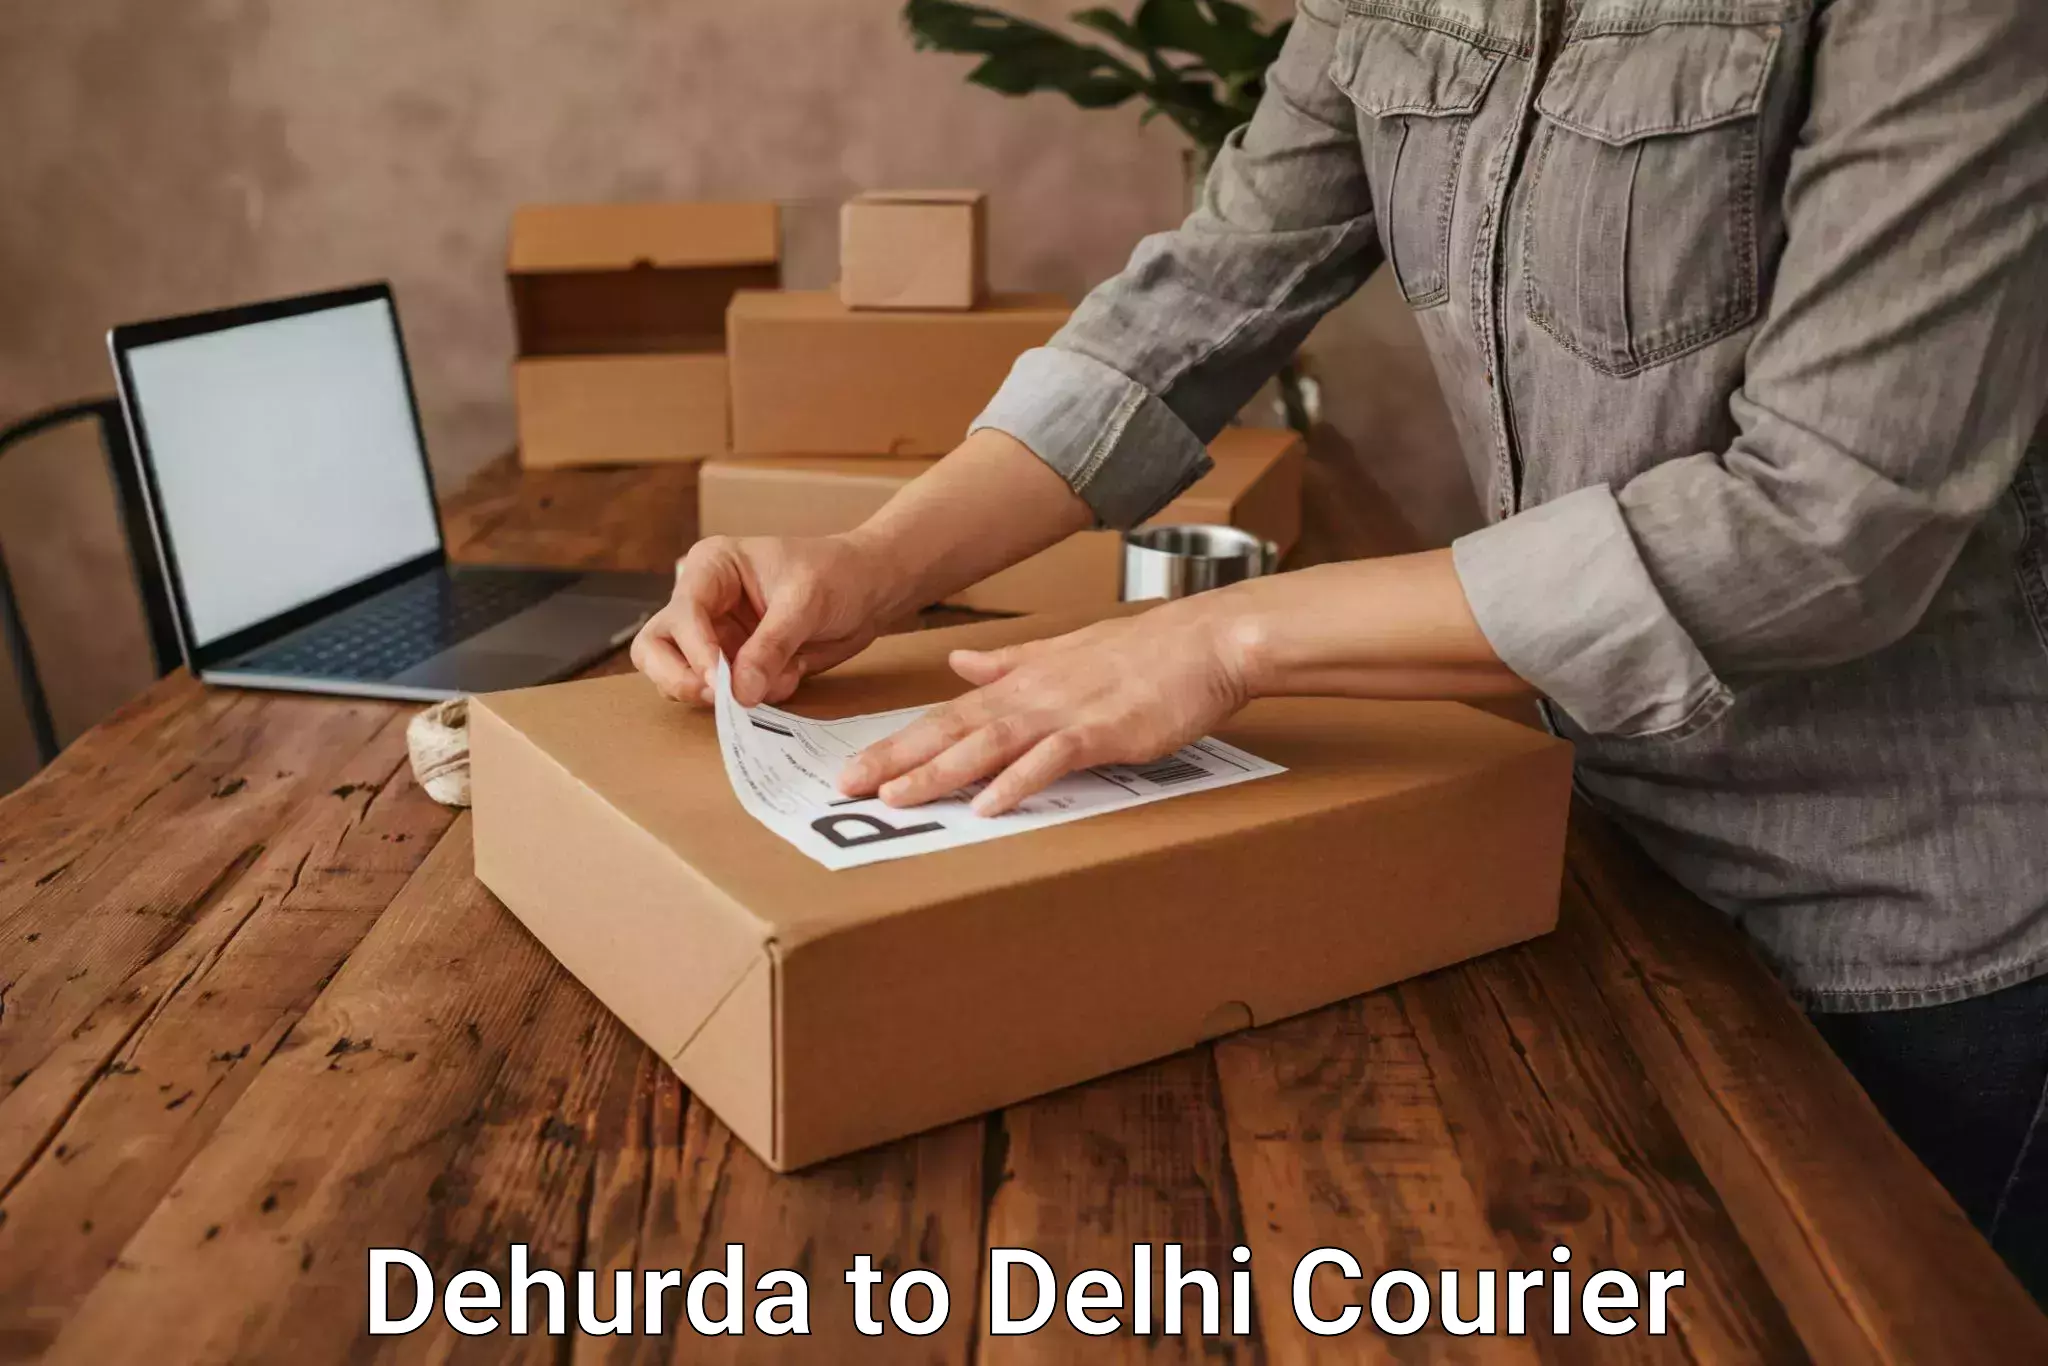 Cargo courier service Dehurda to Delhi